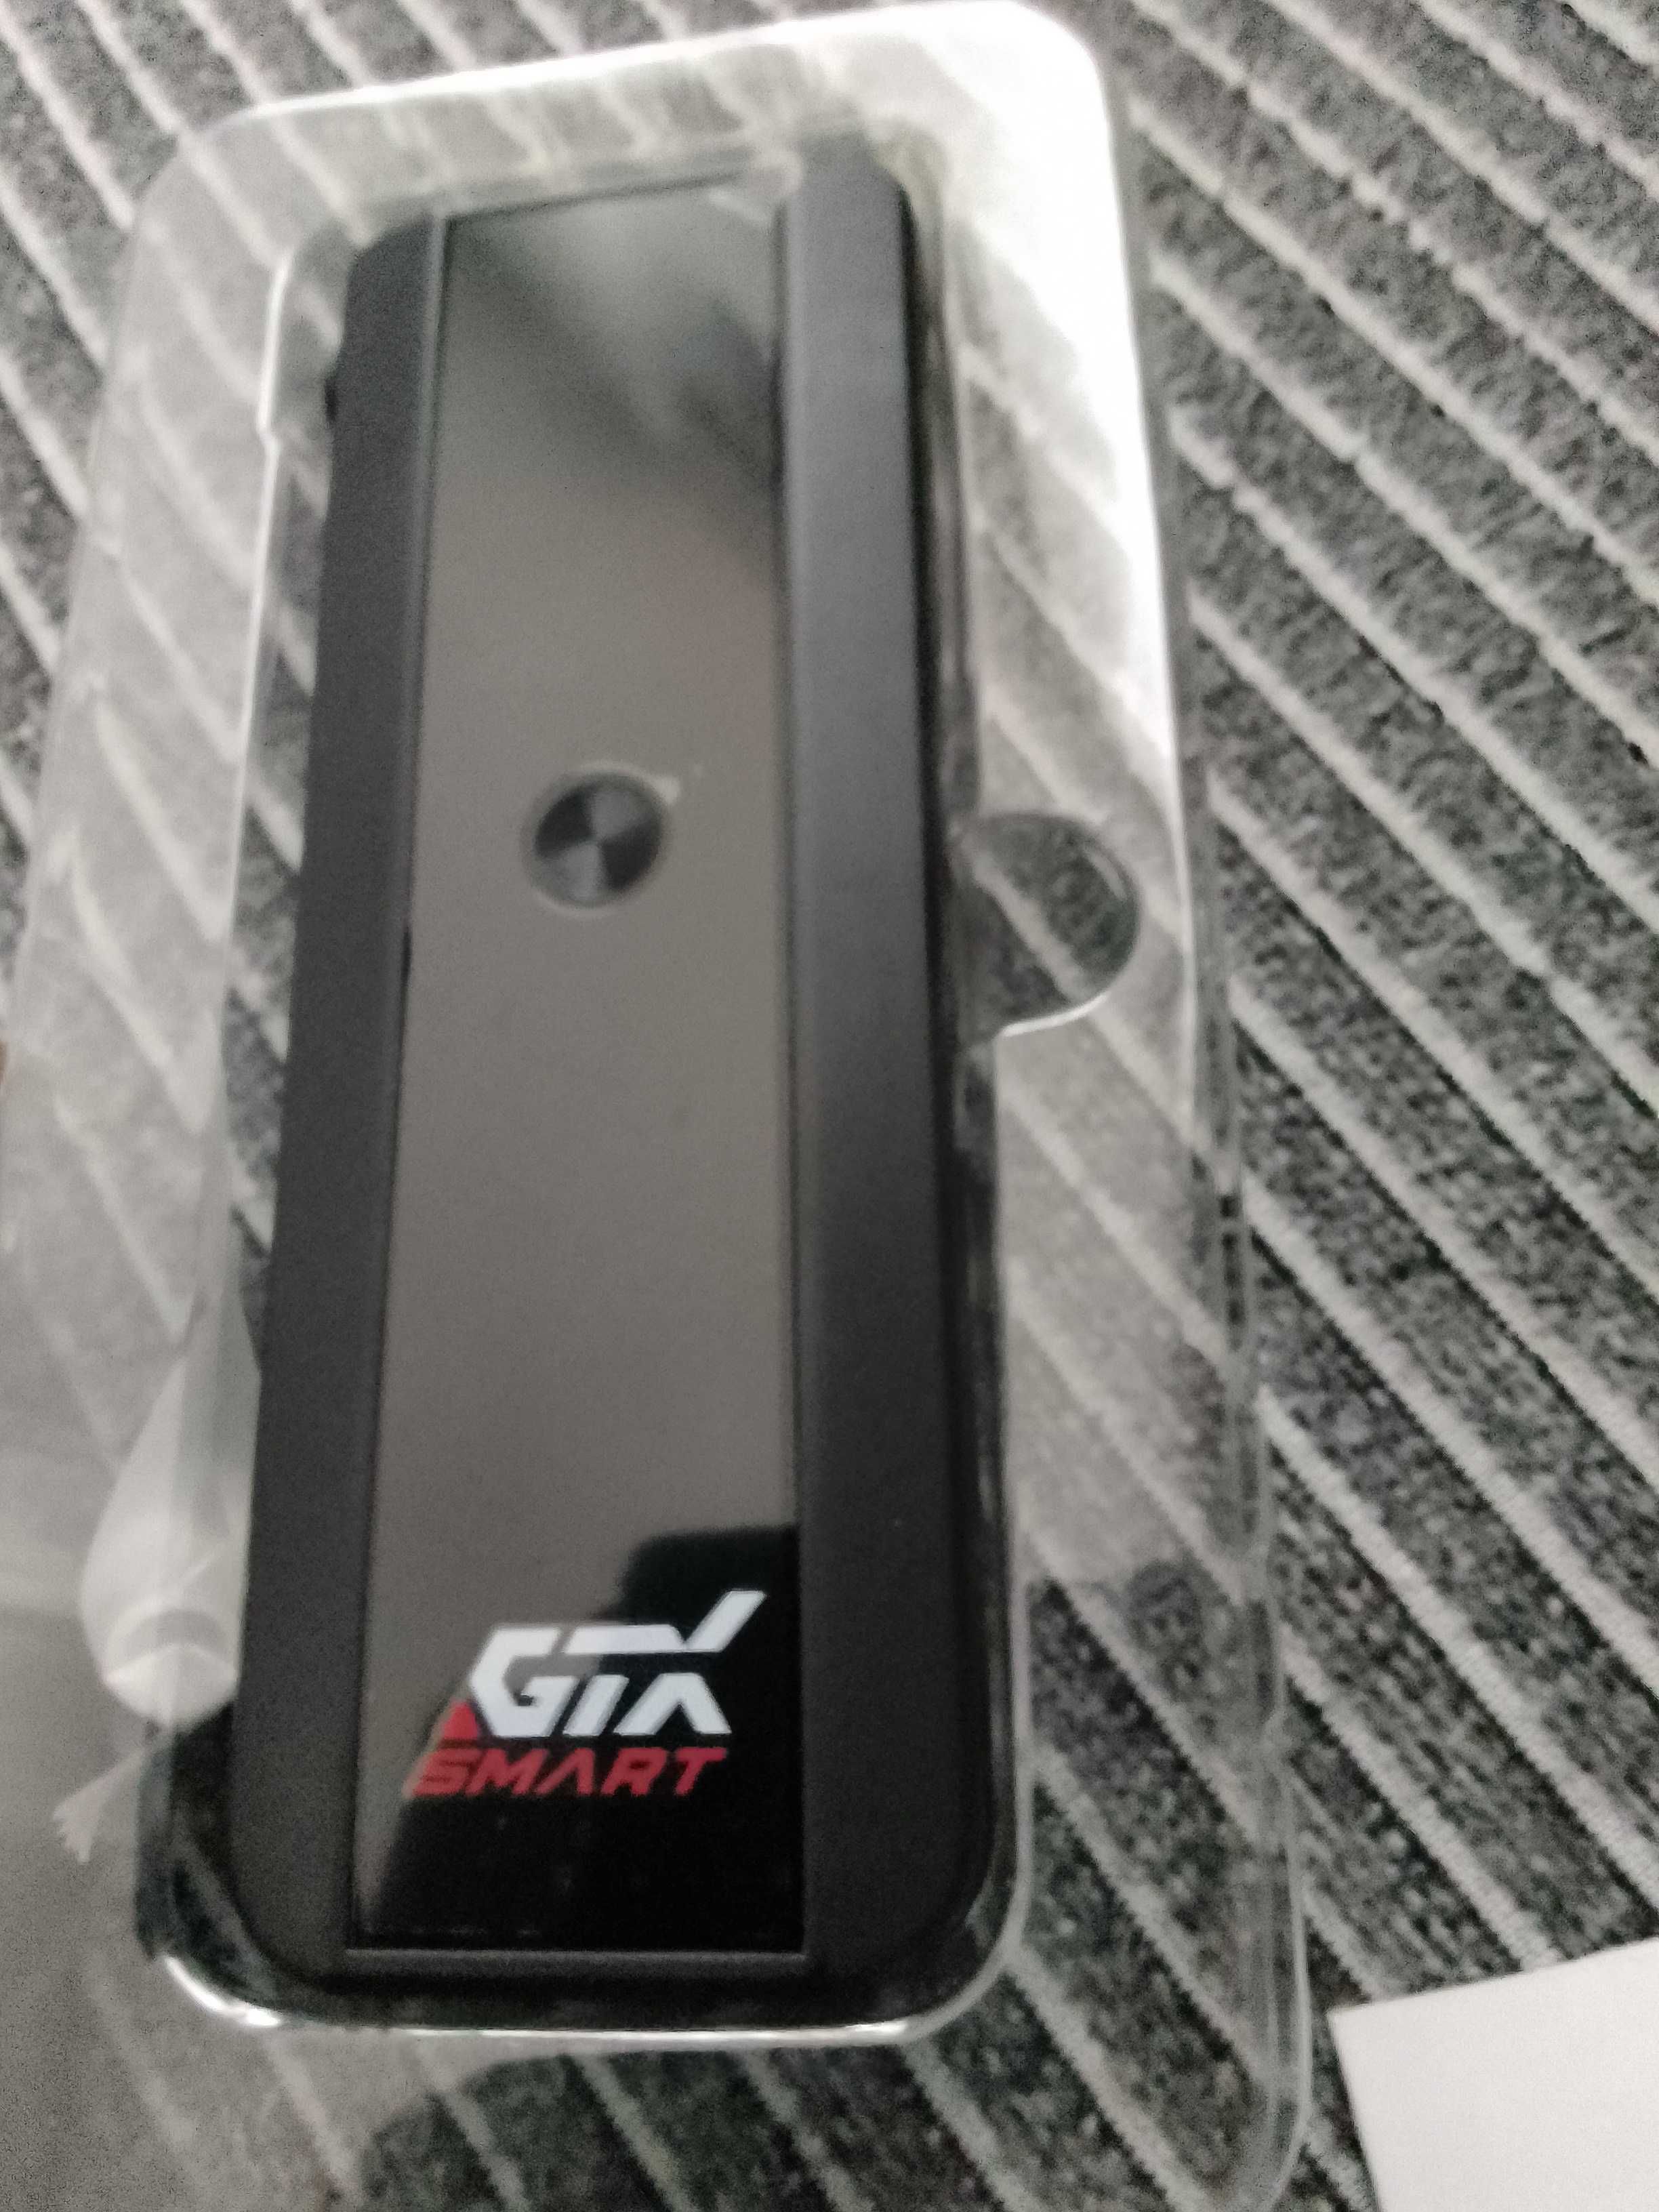 Alkomat GTX Smart nowy ze sklepu folie oryginalne zapakowany